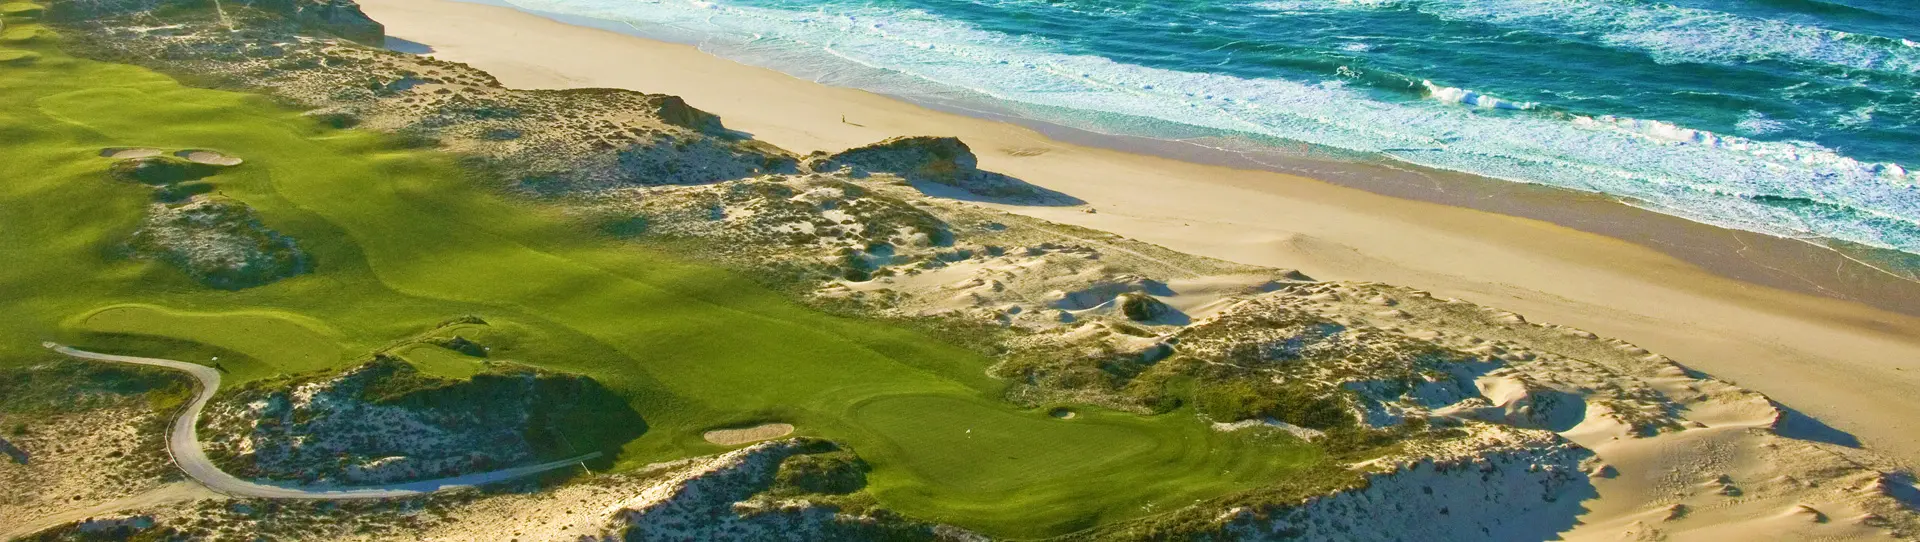 Portugal golf holidays - Praia Del Rey & West Cliffs - Photo 2